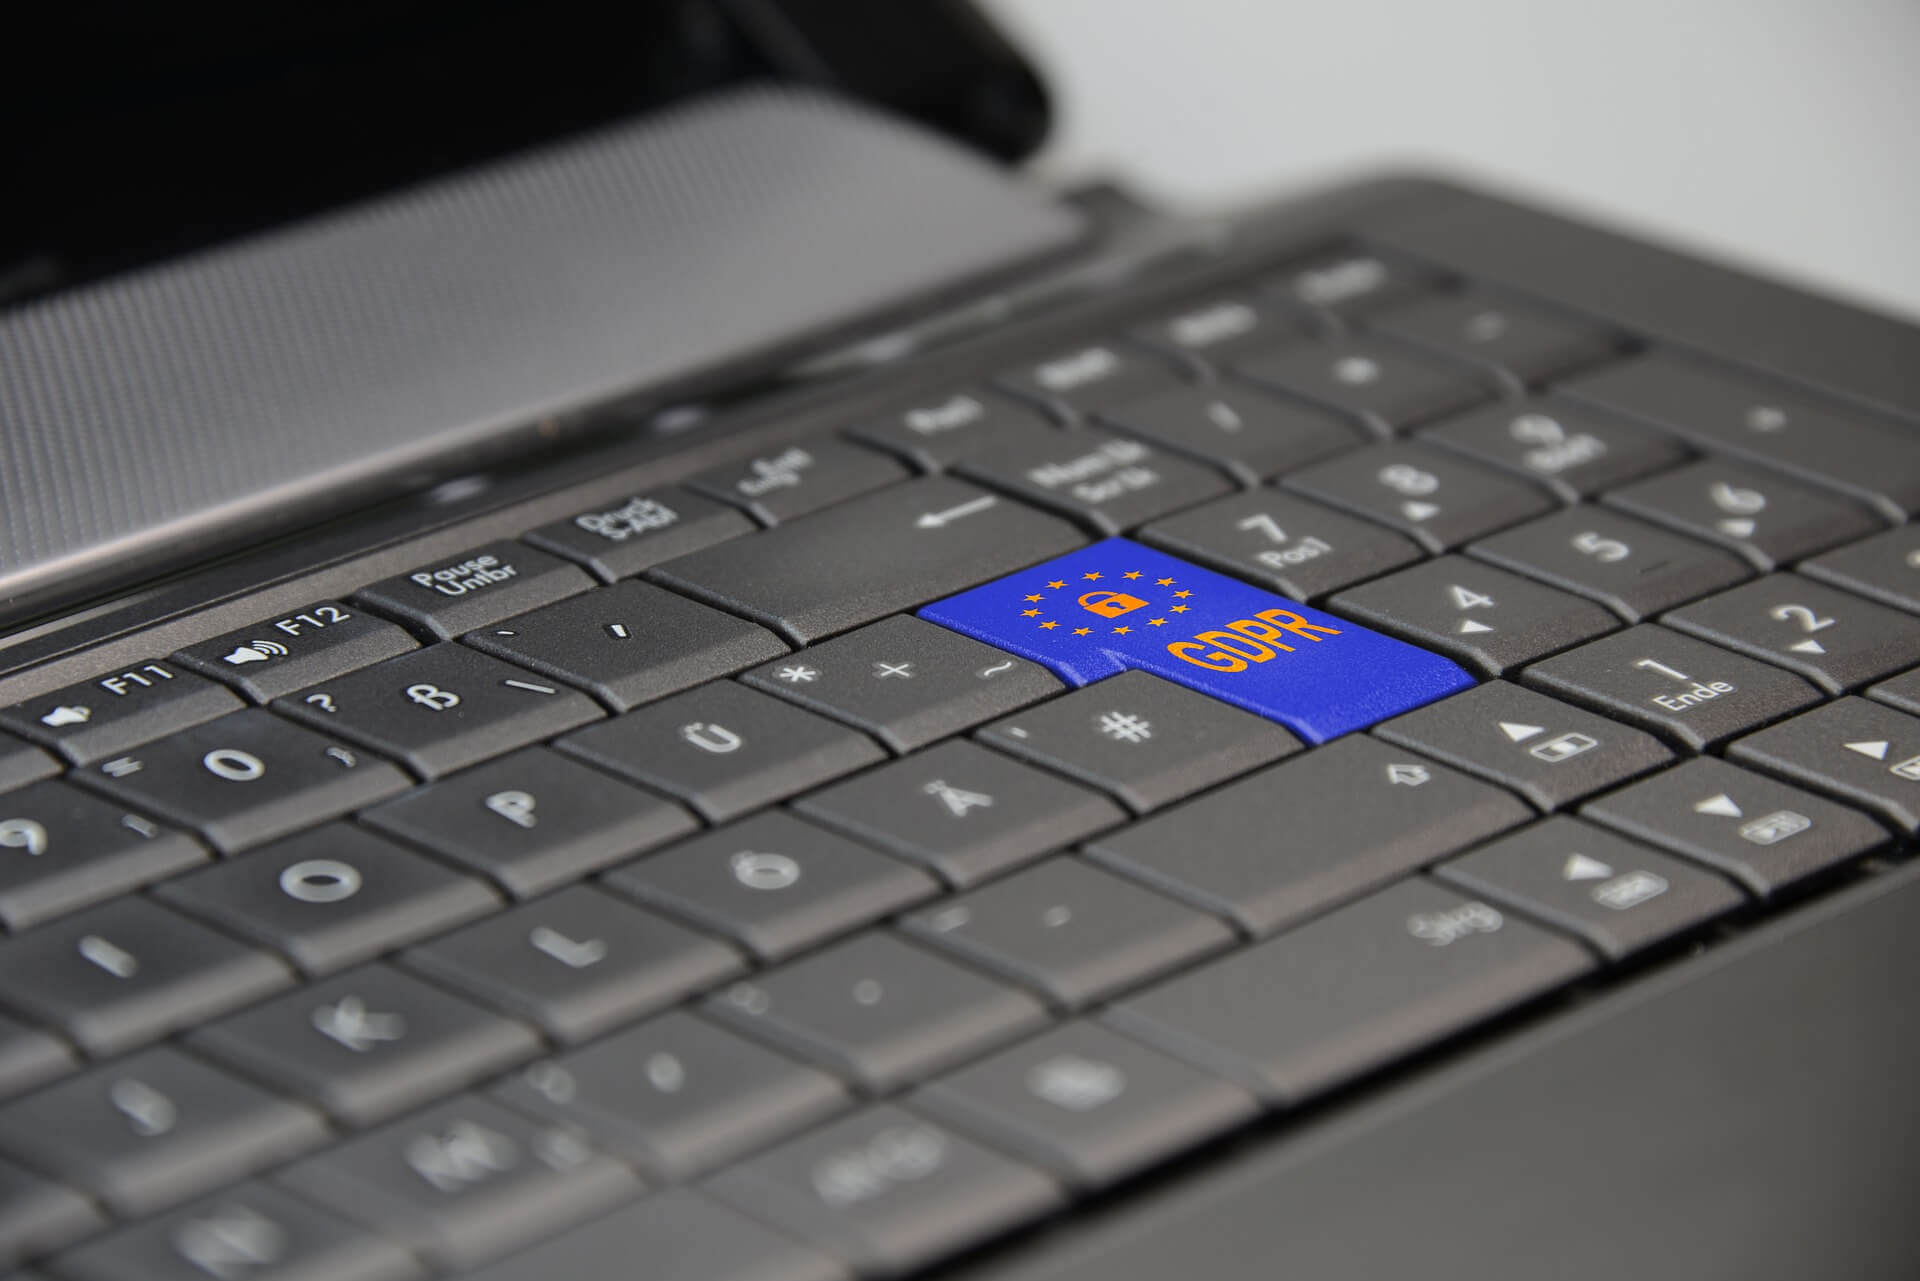 EU GDPR Data Privacy Policy Update